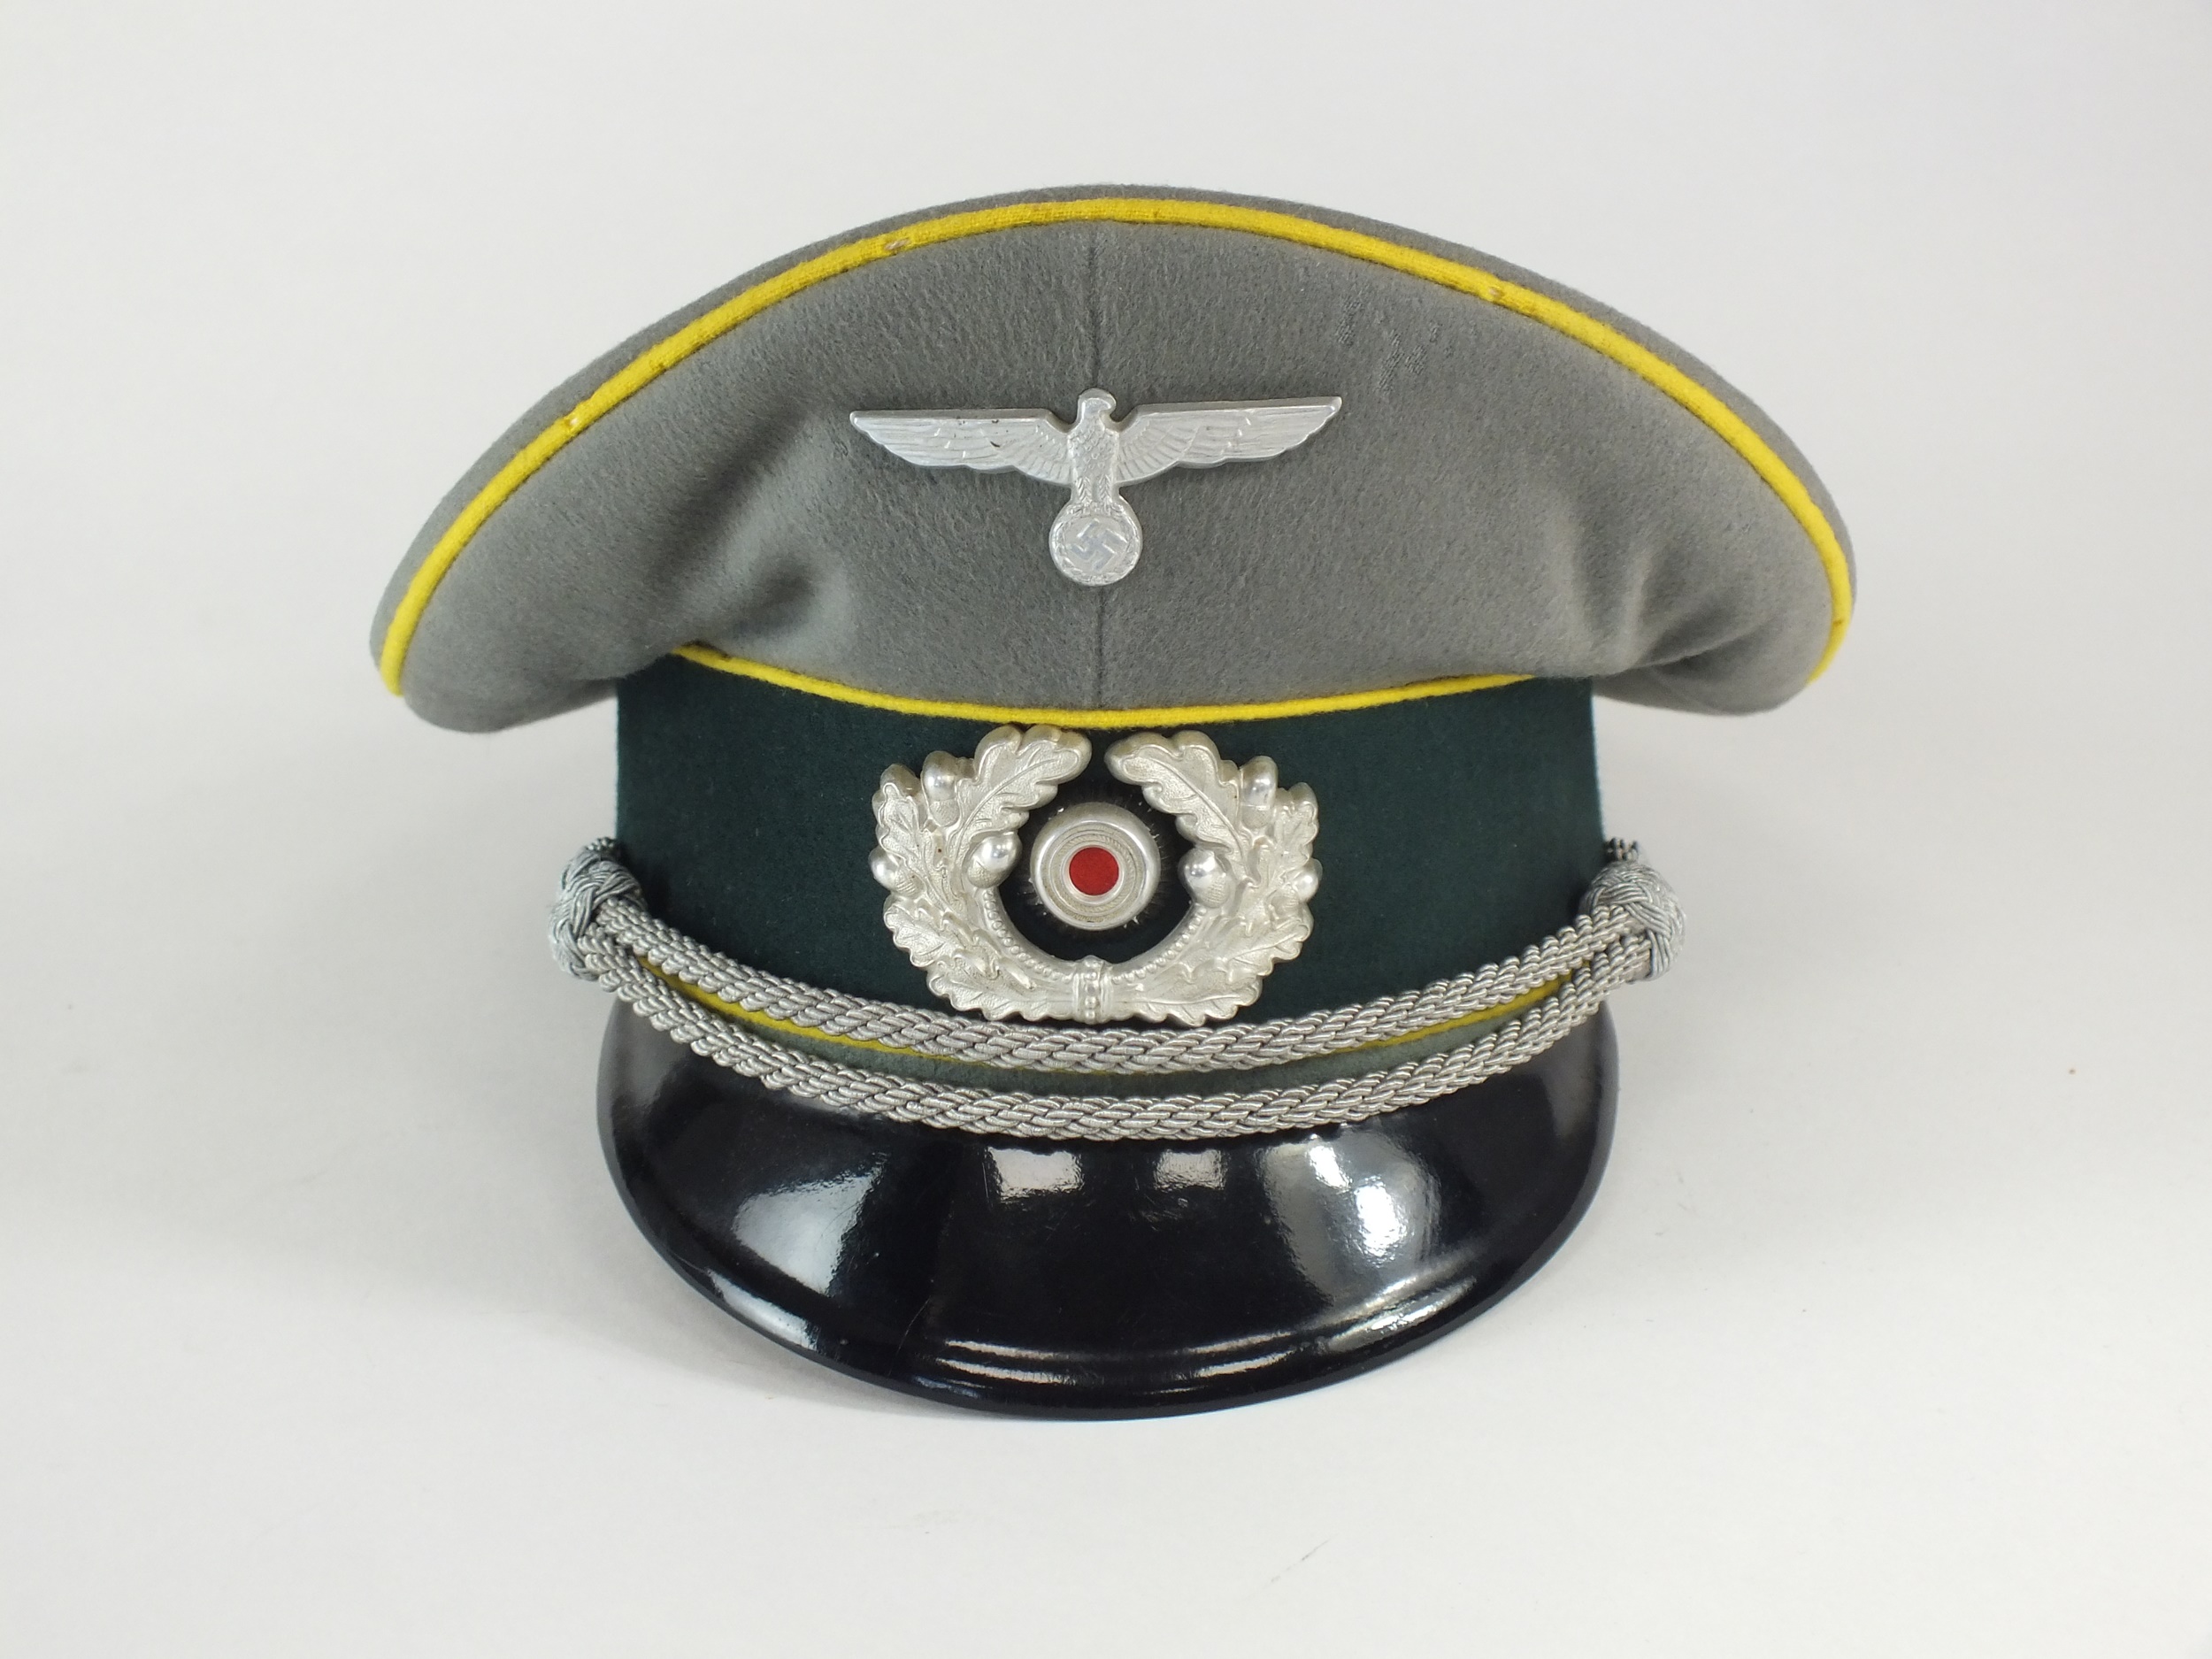 A German Second World War Heer (Army) Signal Officer's visor cap